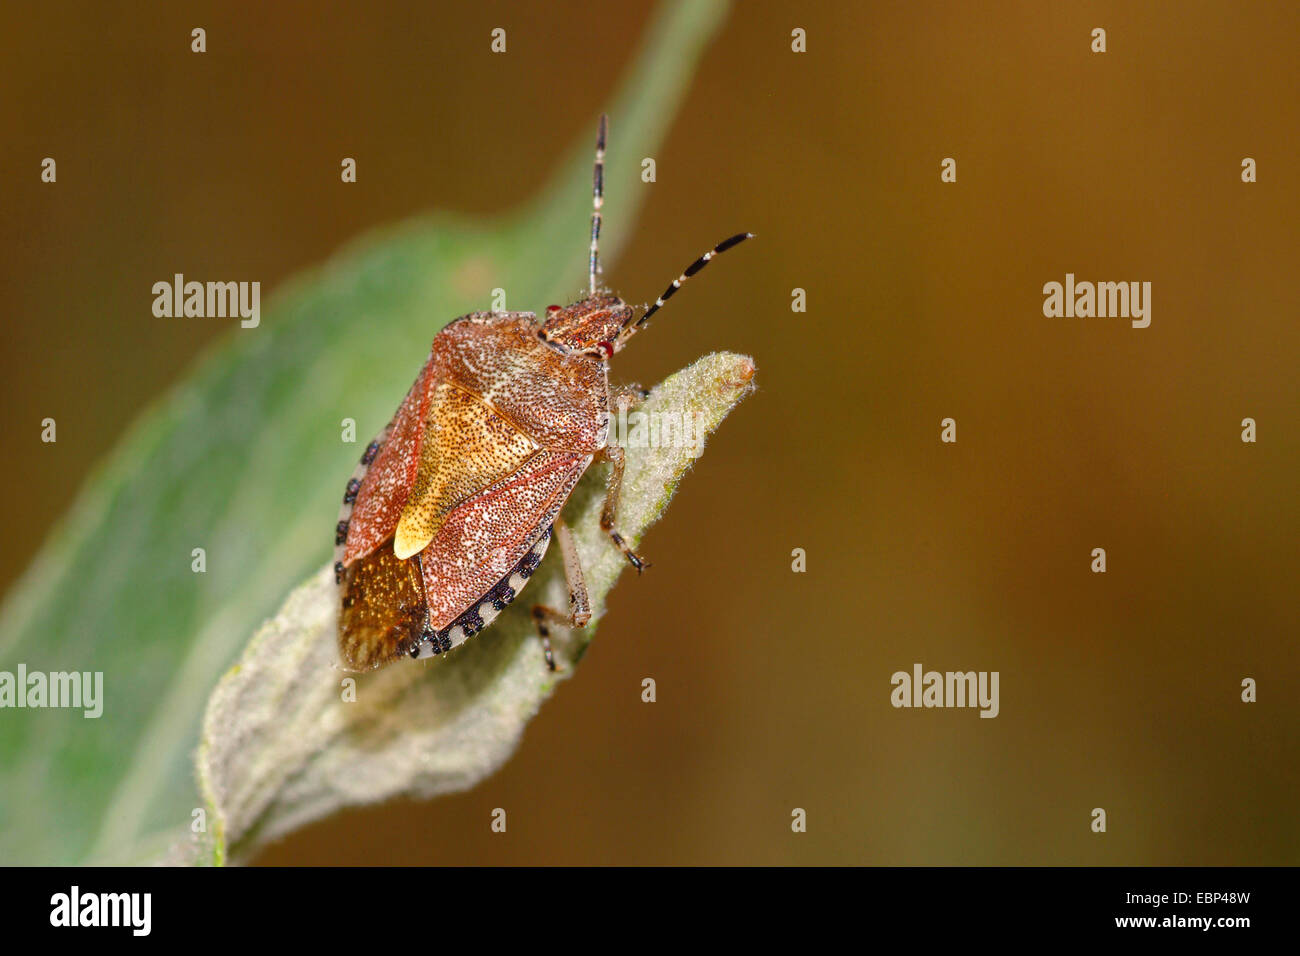 sloe bug, sloebug (Dolycoris baccarum), on a leaf, Germany Stock Photo